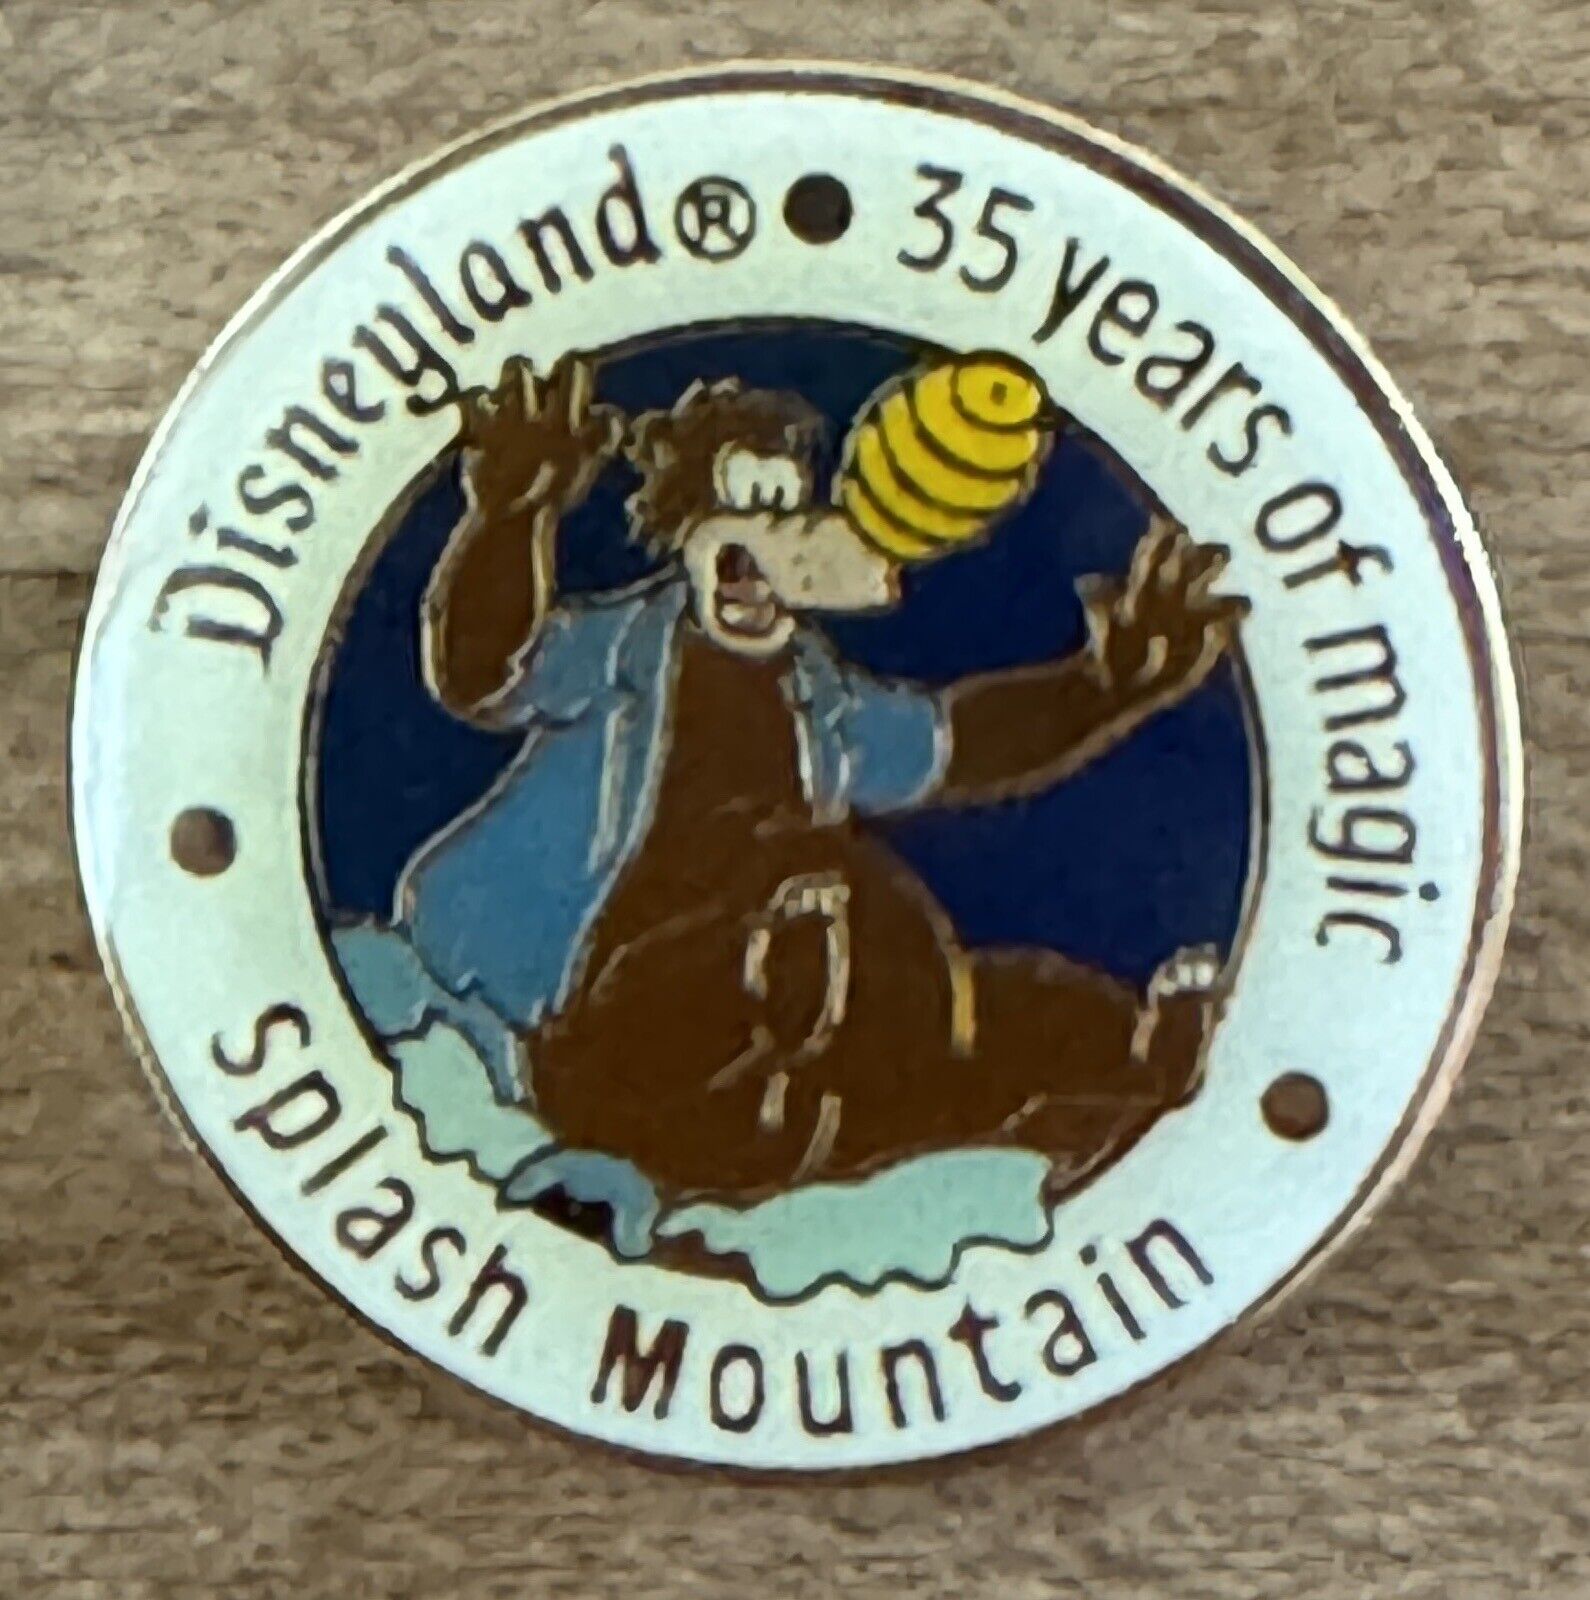 Disneyland 35 Years of Magic Splash Mountain Brer Bear Disney Pin 1990 Vintage